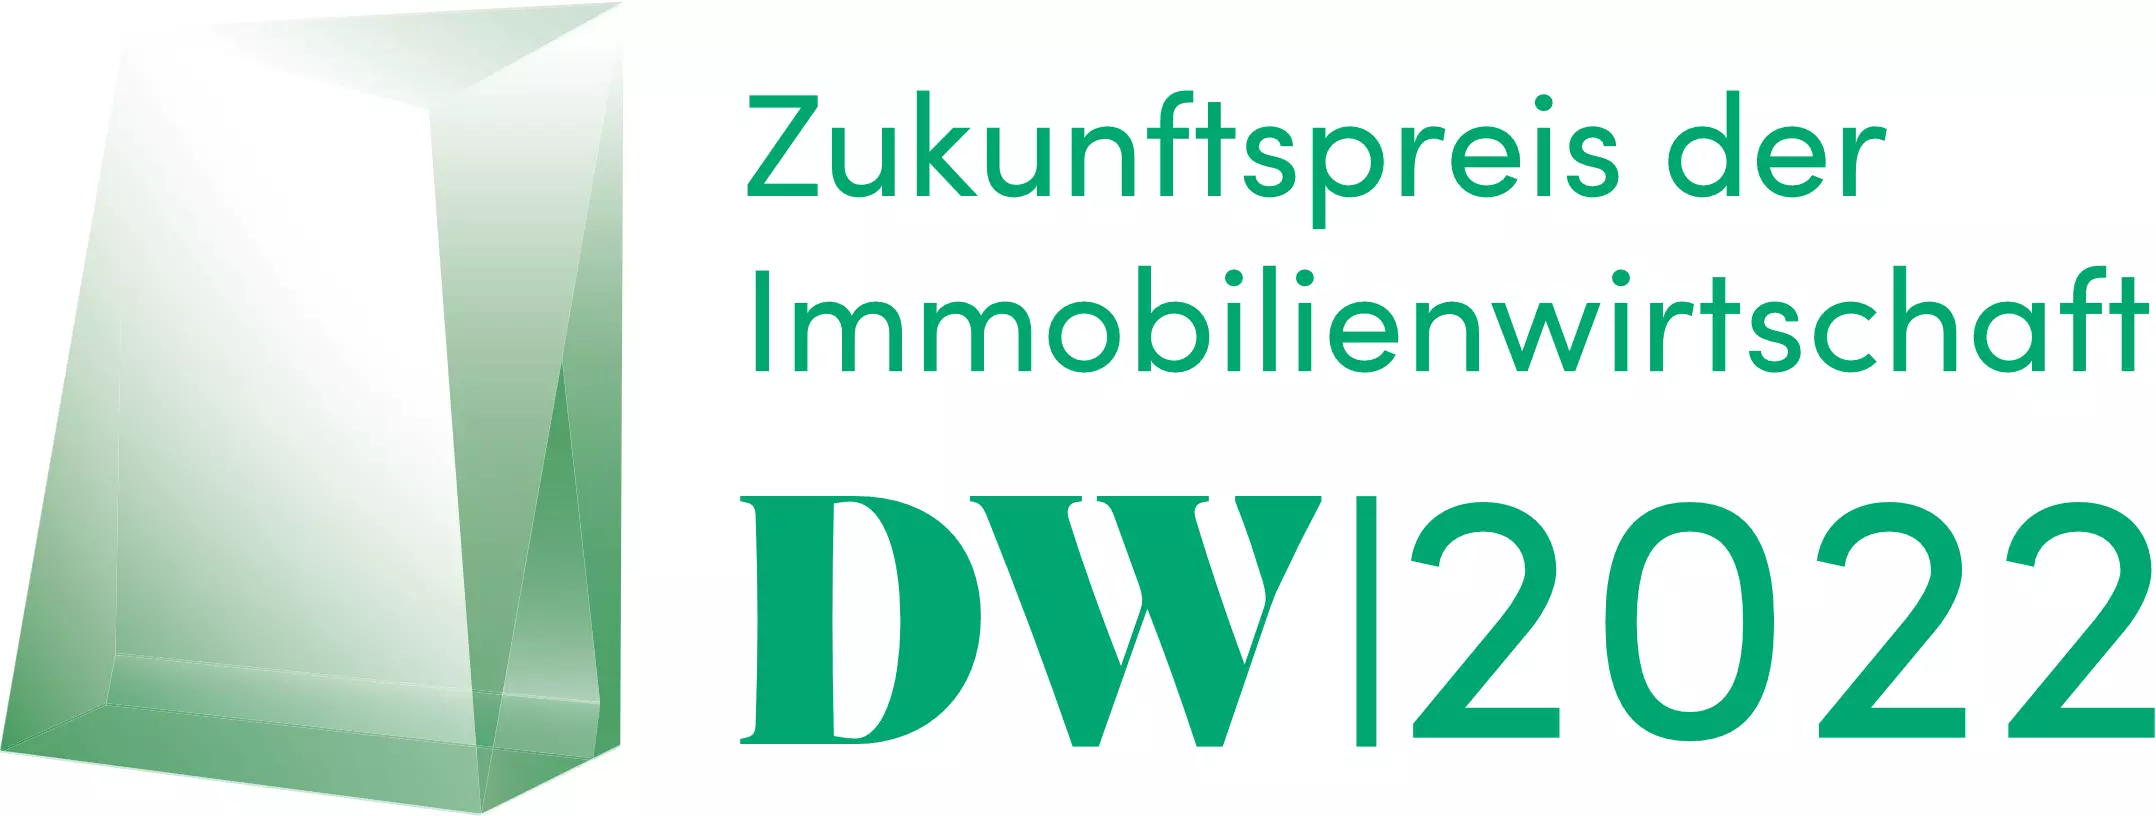 Logo DW-Zukunftspreis der Immobilienwirtschaft 2022